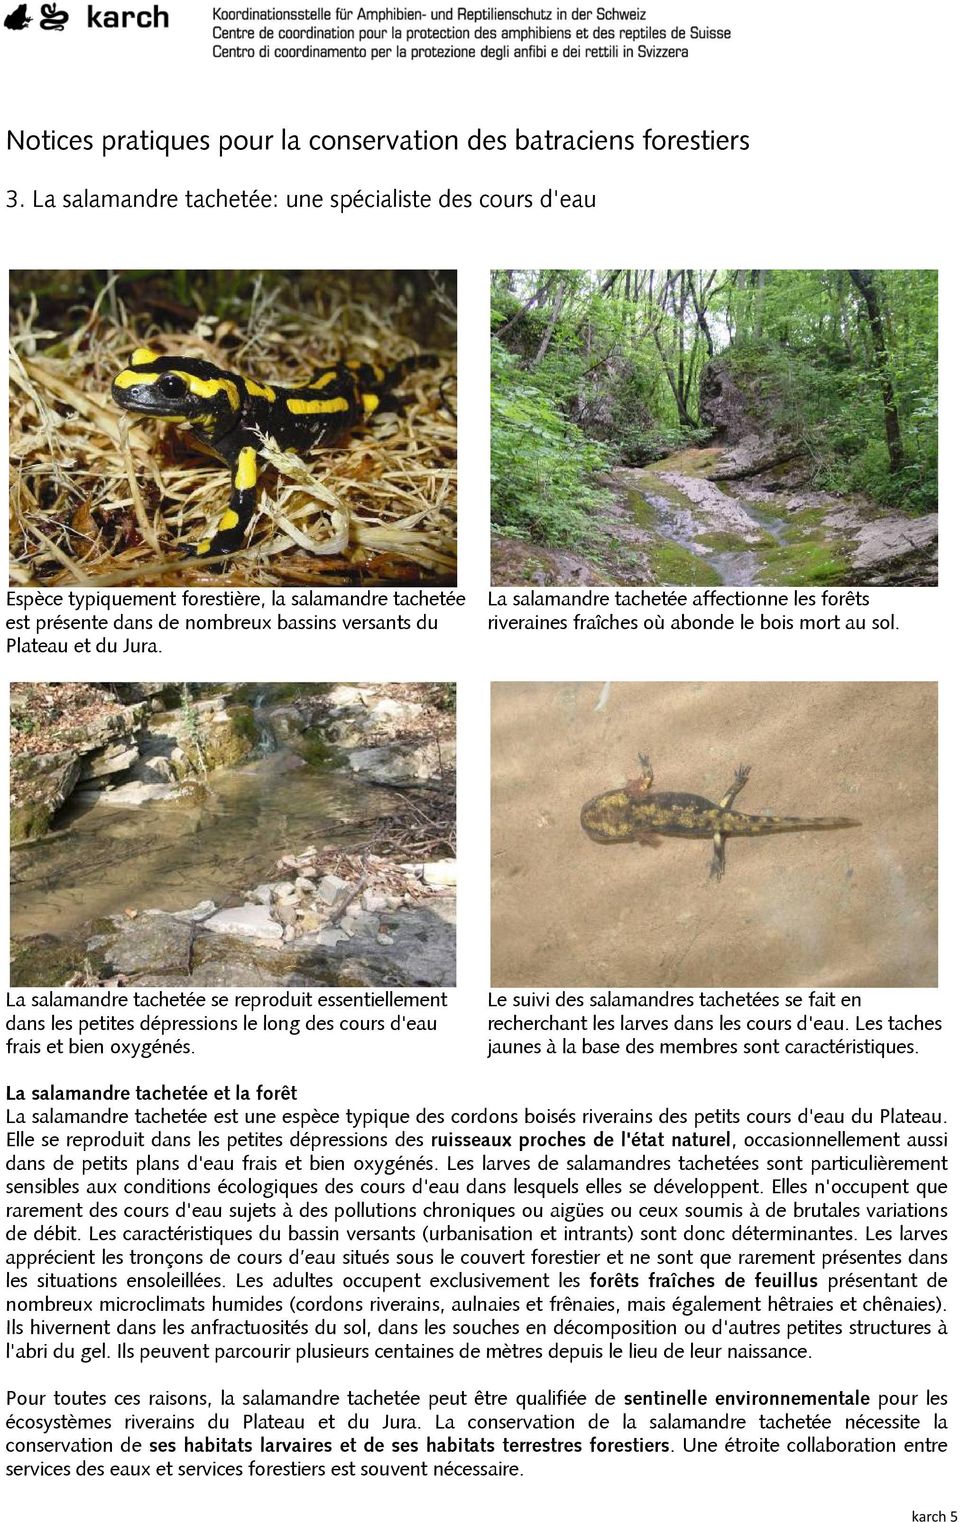 La salamandre tachetée affectionne les forêts riveraines fraîches où abonde le bois mort au sol.